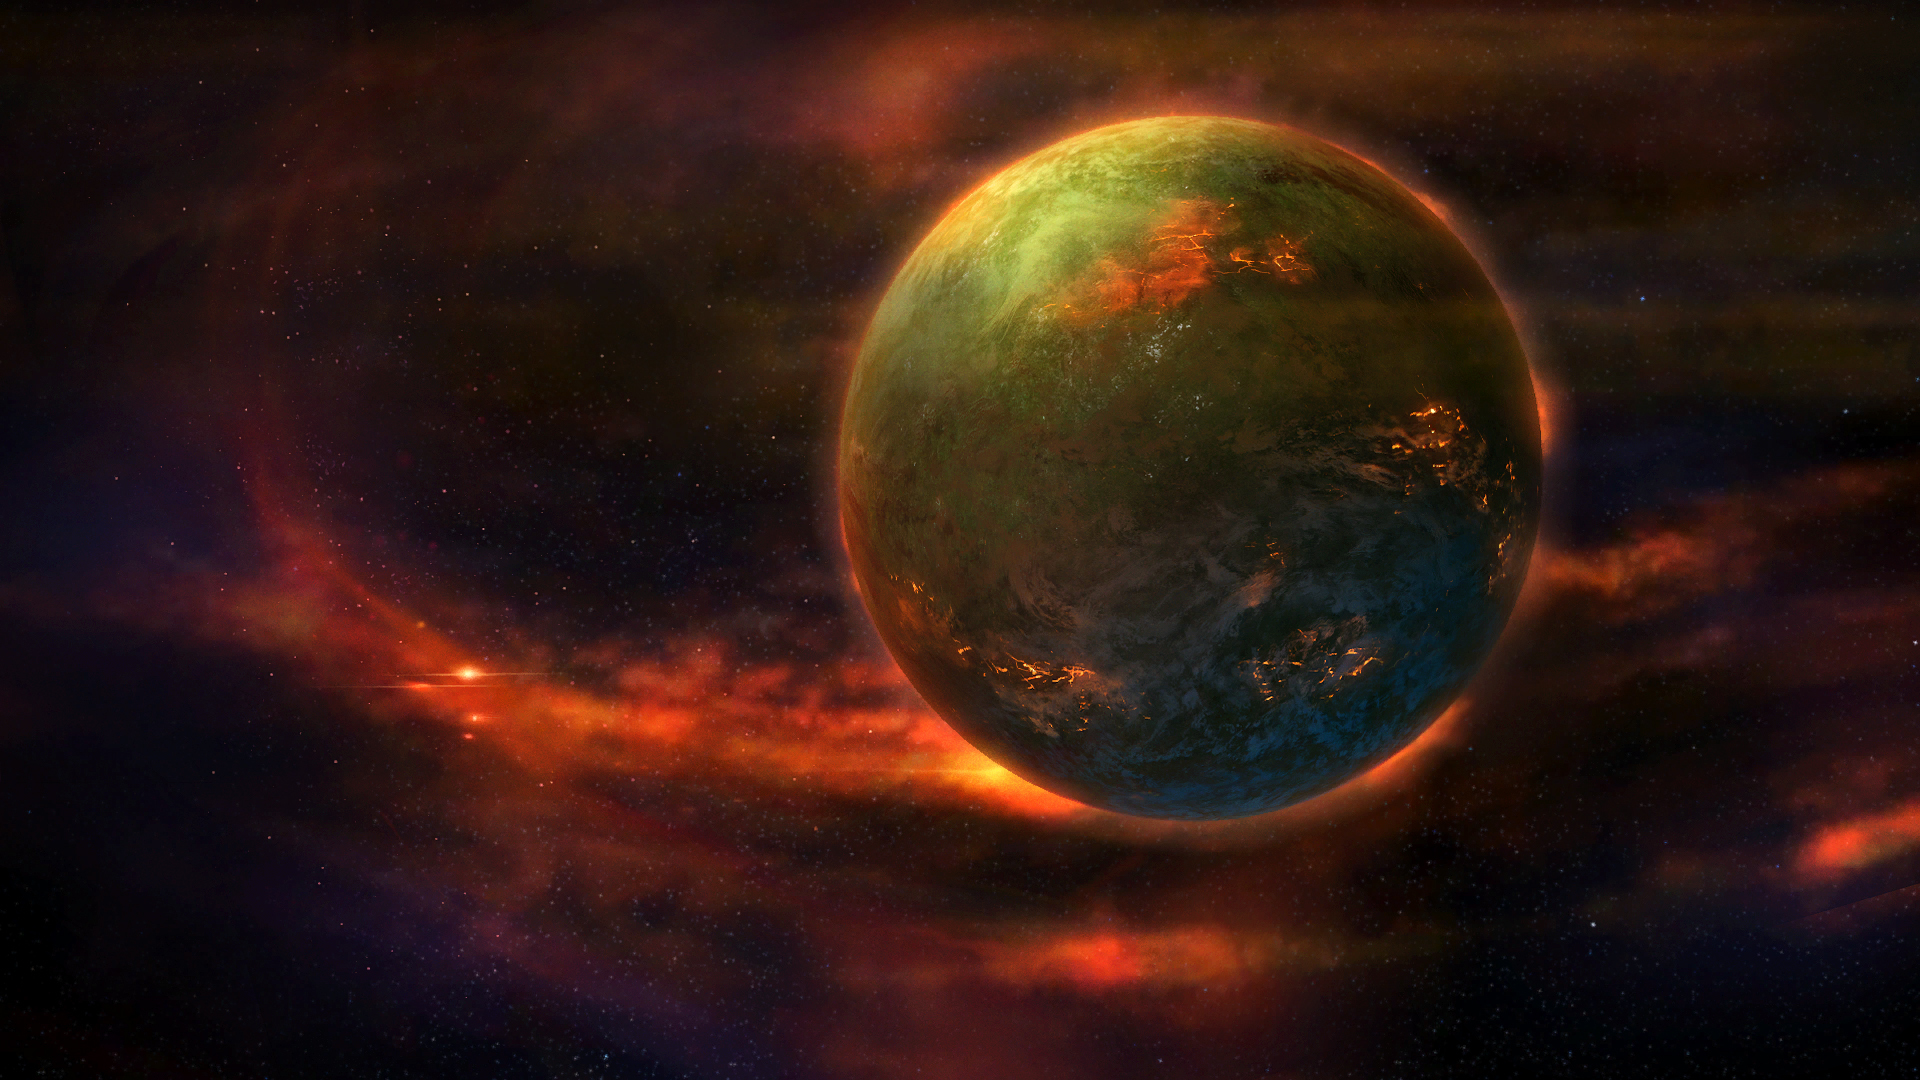 Обои космос планета игры StarCraft картинки на рабочий стол на тему Космос - скачать бесплатно